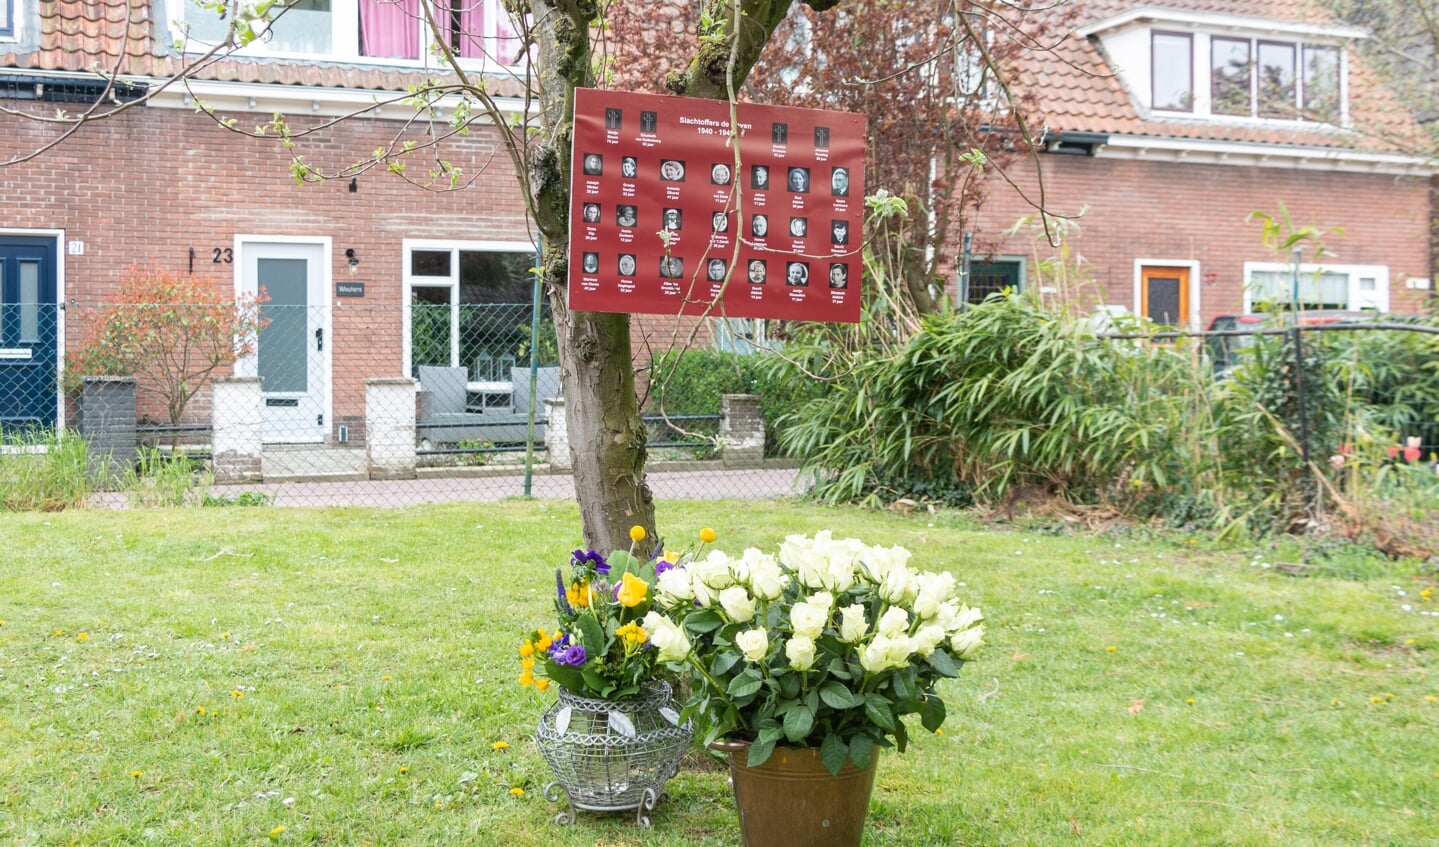 De plaquette met de slachtoffers, de rozen en het bloemstuk. Foto: Henk Derksen 